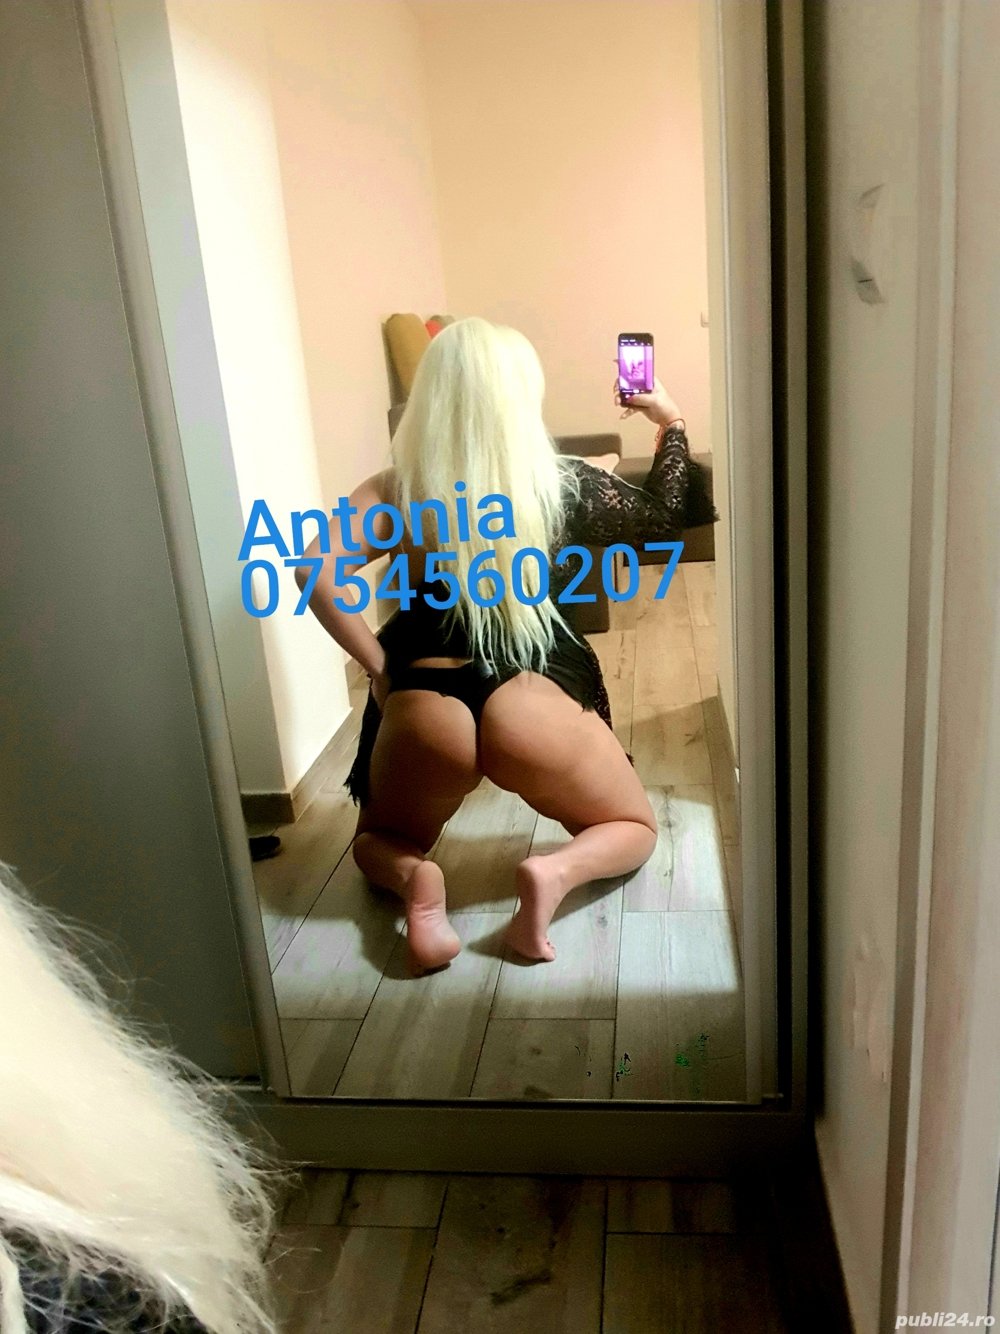 Blonda Antonia...Am revenit  - imagine 3